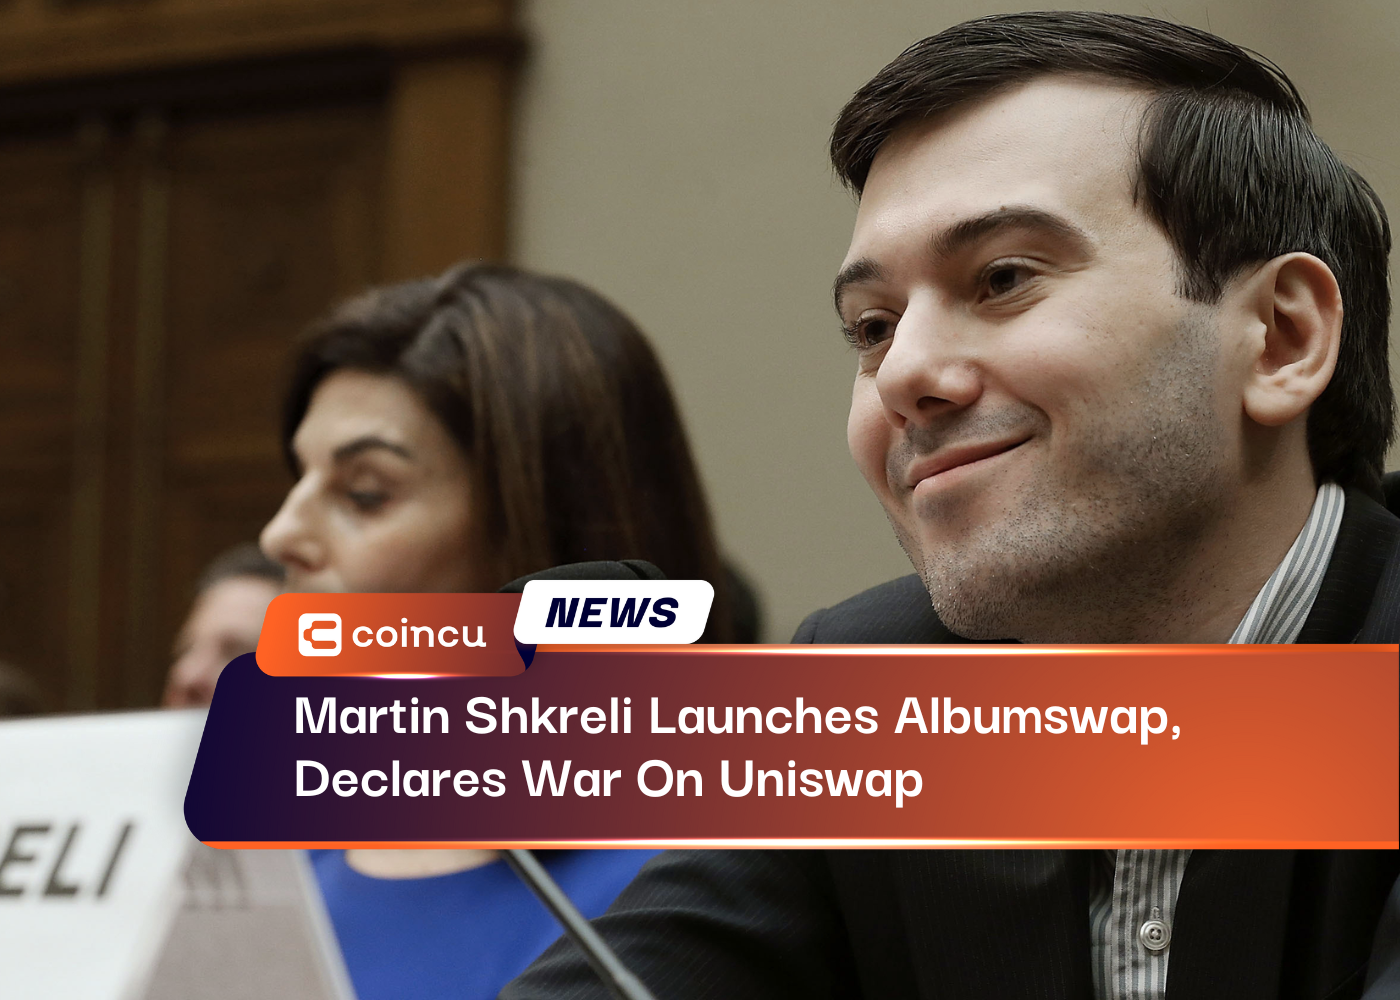 Martin Shkreli lance Albumswap et déclare la guerre à Uniswap